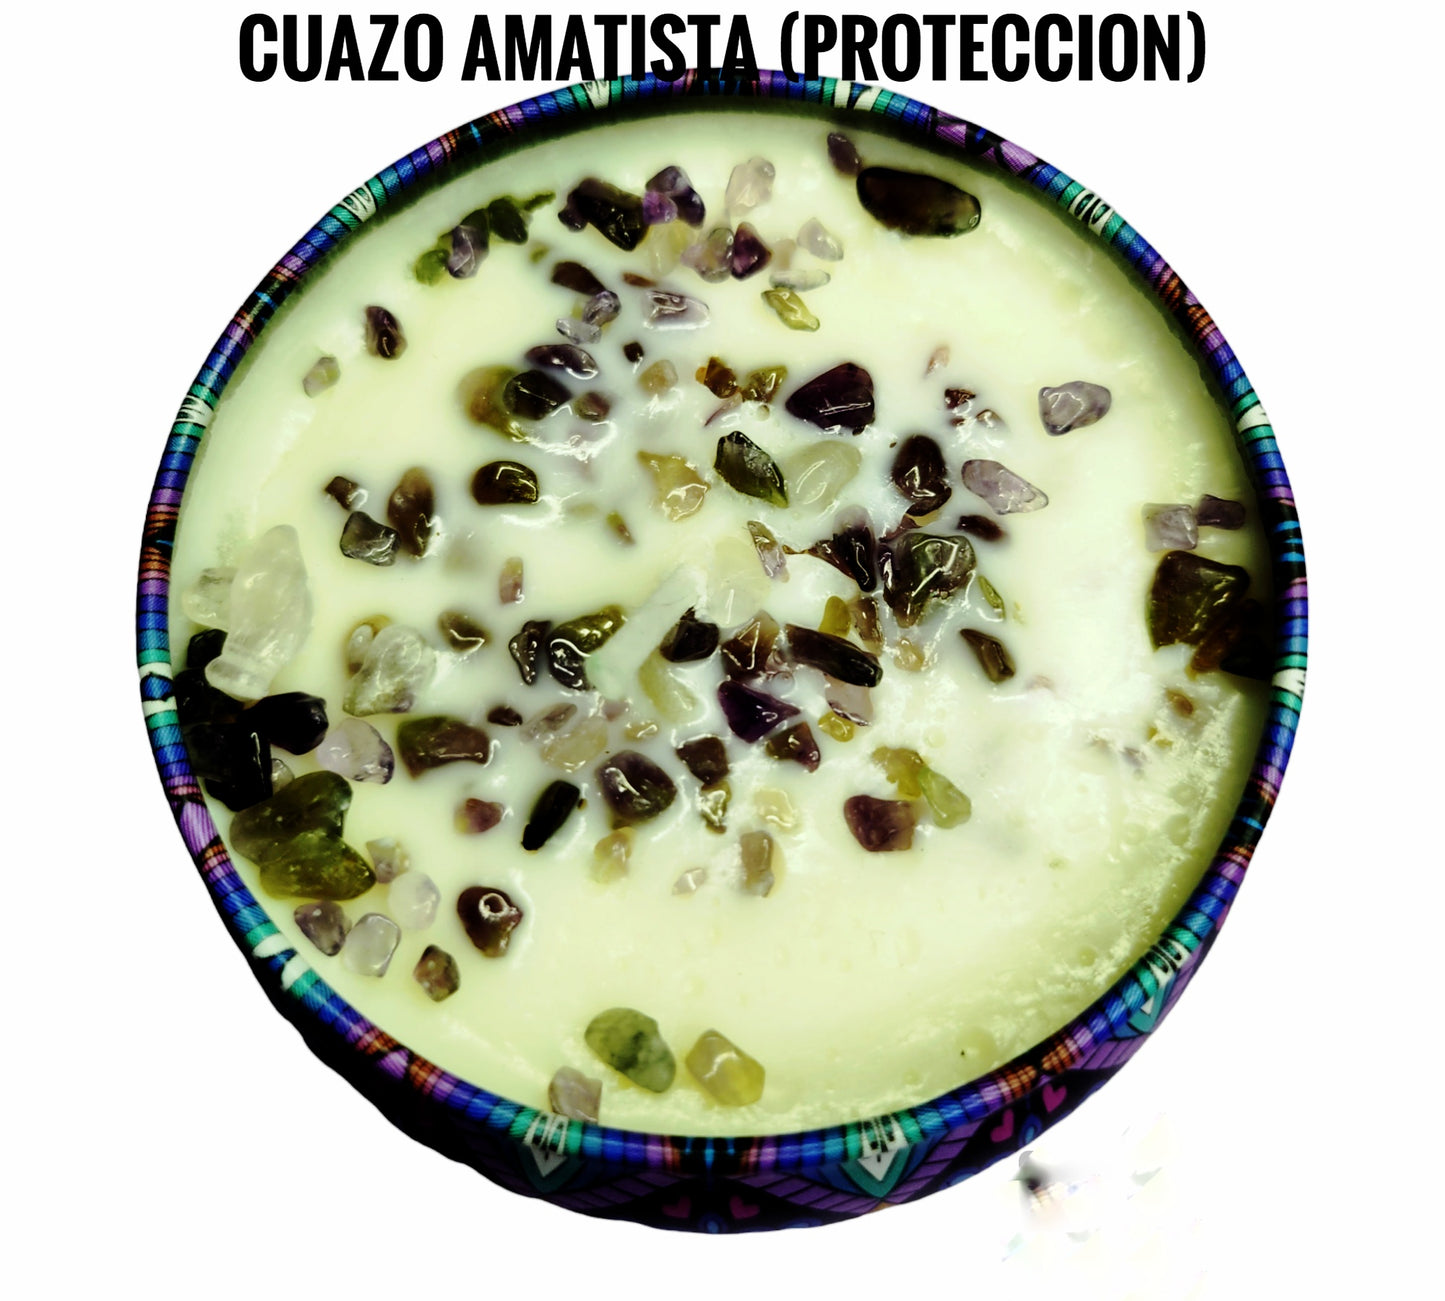 Cuarzo Amatista (Proteccion)